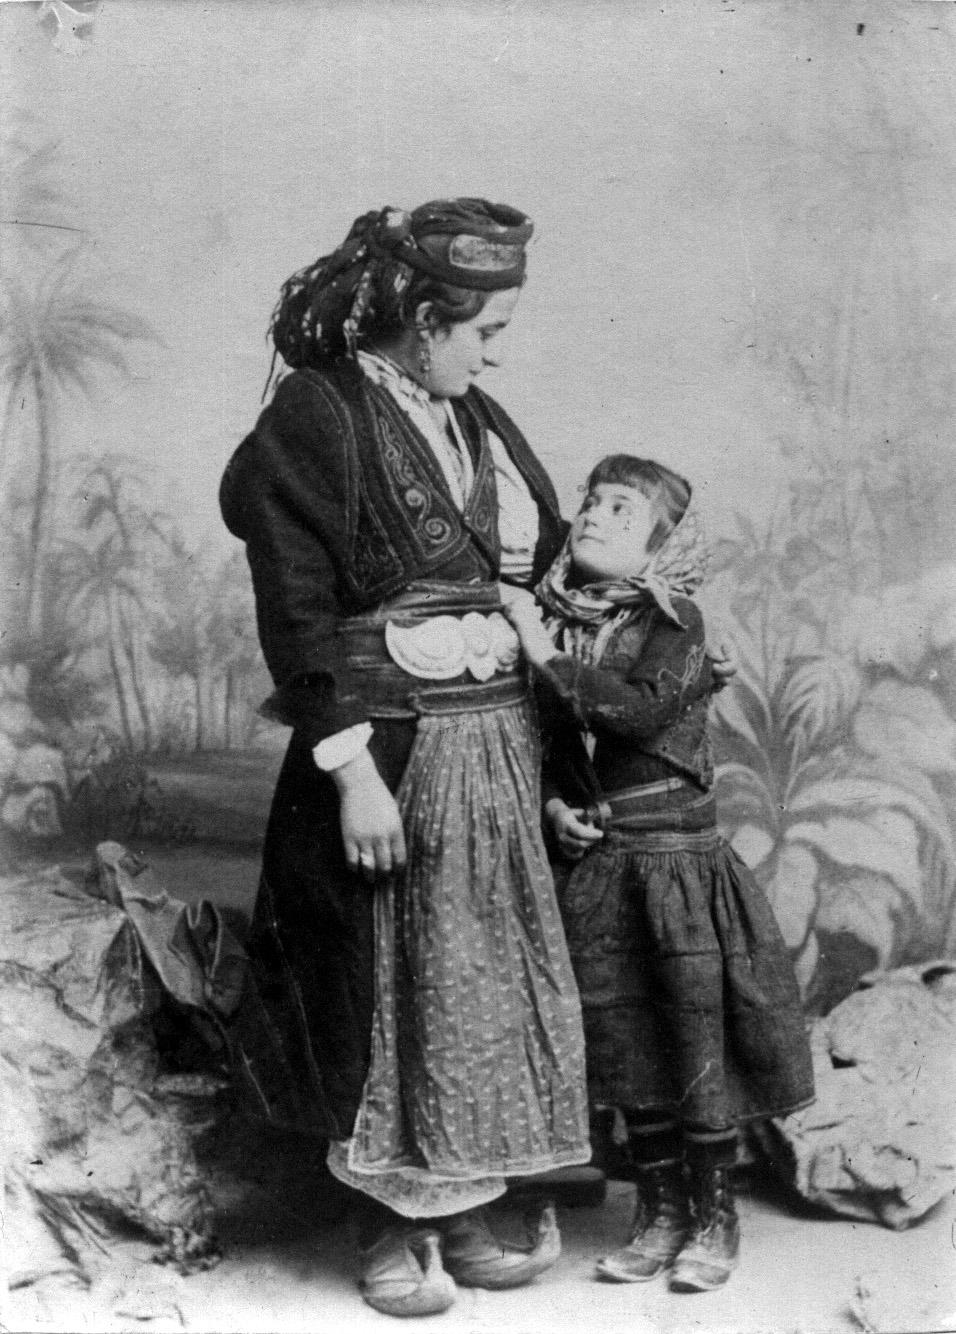 Αρβανιτόβλαχα από το Κεφαλόβρυσο, στην περιοχή Πωγωνίου Ηπείρου. "Εθνογραφικό Λεύκωμα" 1906. Αφοί Μανάκια.